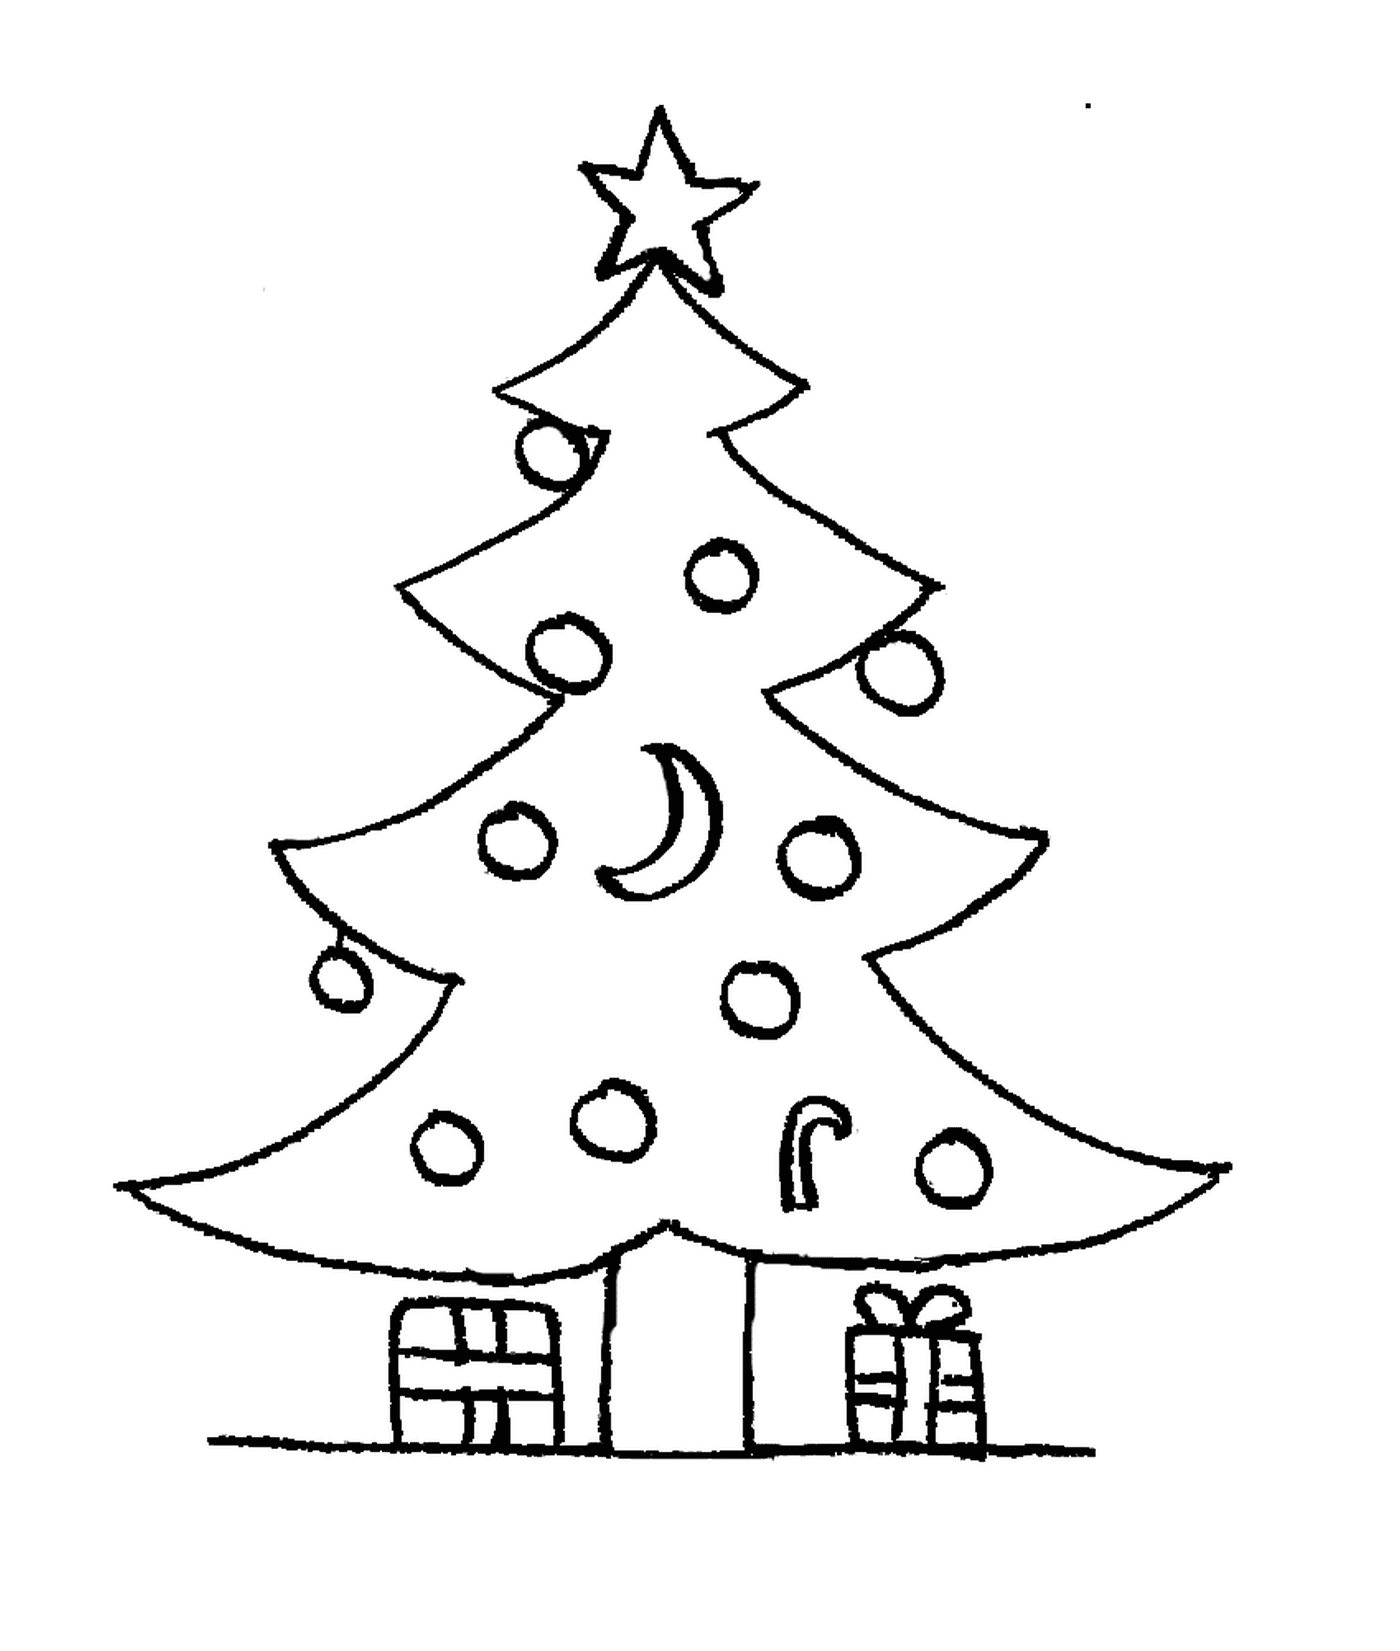  Un albero di Natale con regali al piano di sopra 